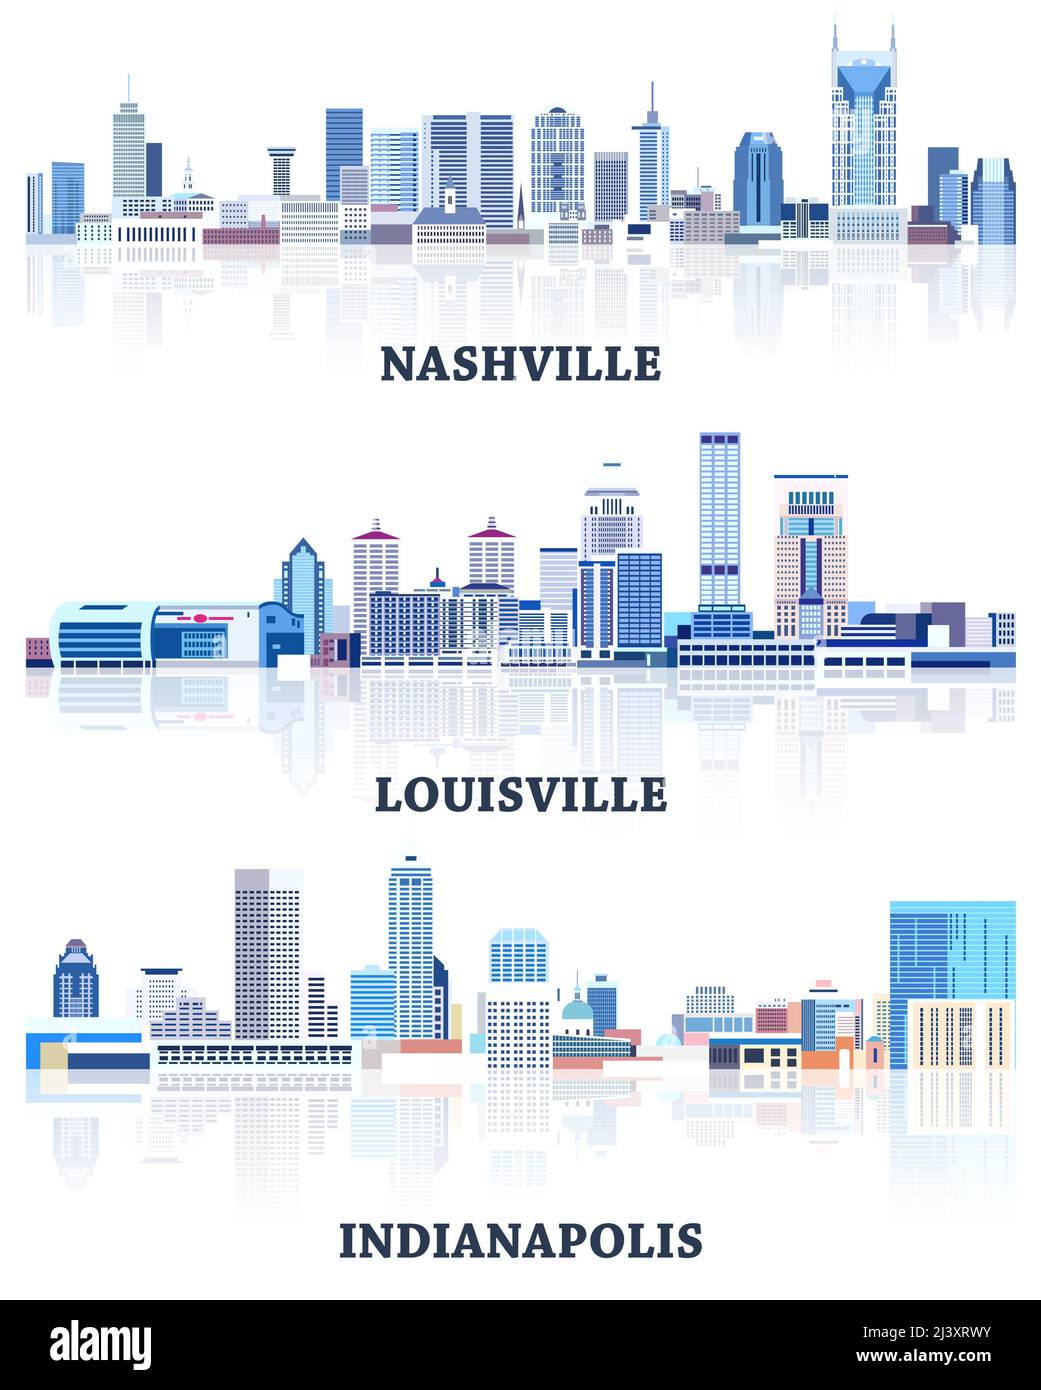 vektor-Sammlung von Stadtlandschaften der Vereinigten Staaten: Nashville, Louisville, Indianapolis Skylines in Blautönen Farbpalette. Сrystal Ästhetik Stil Stock Vektor